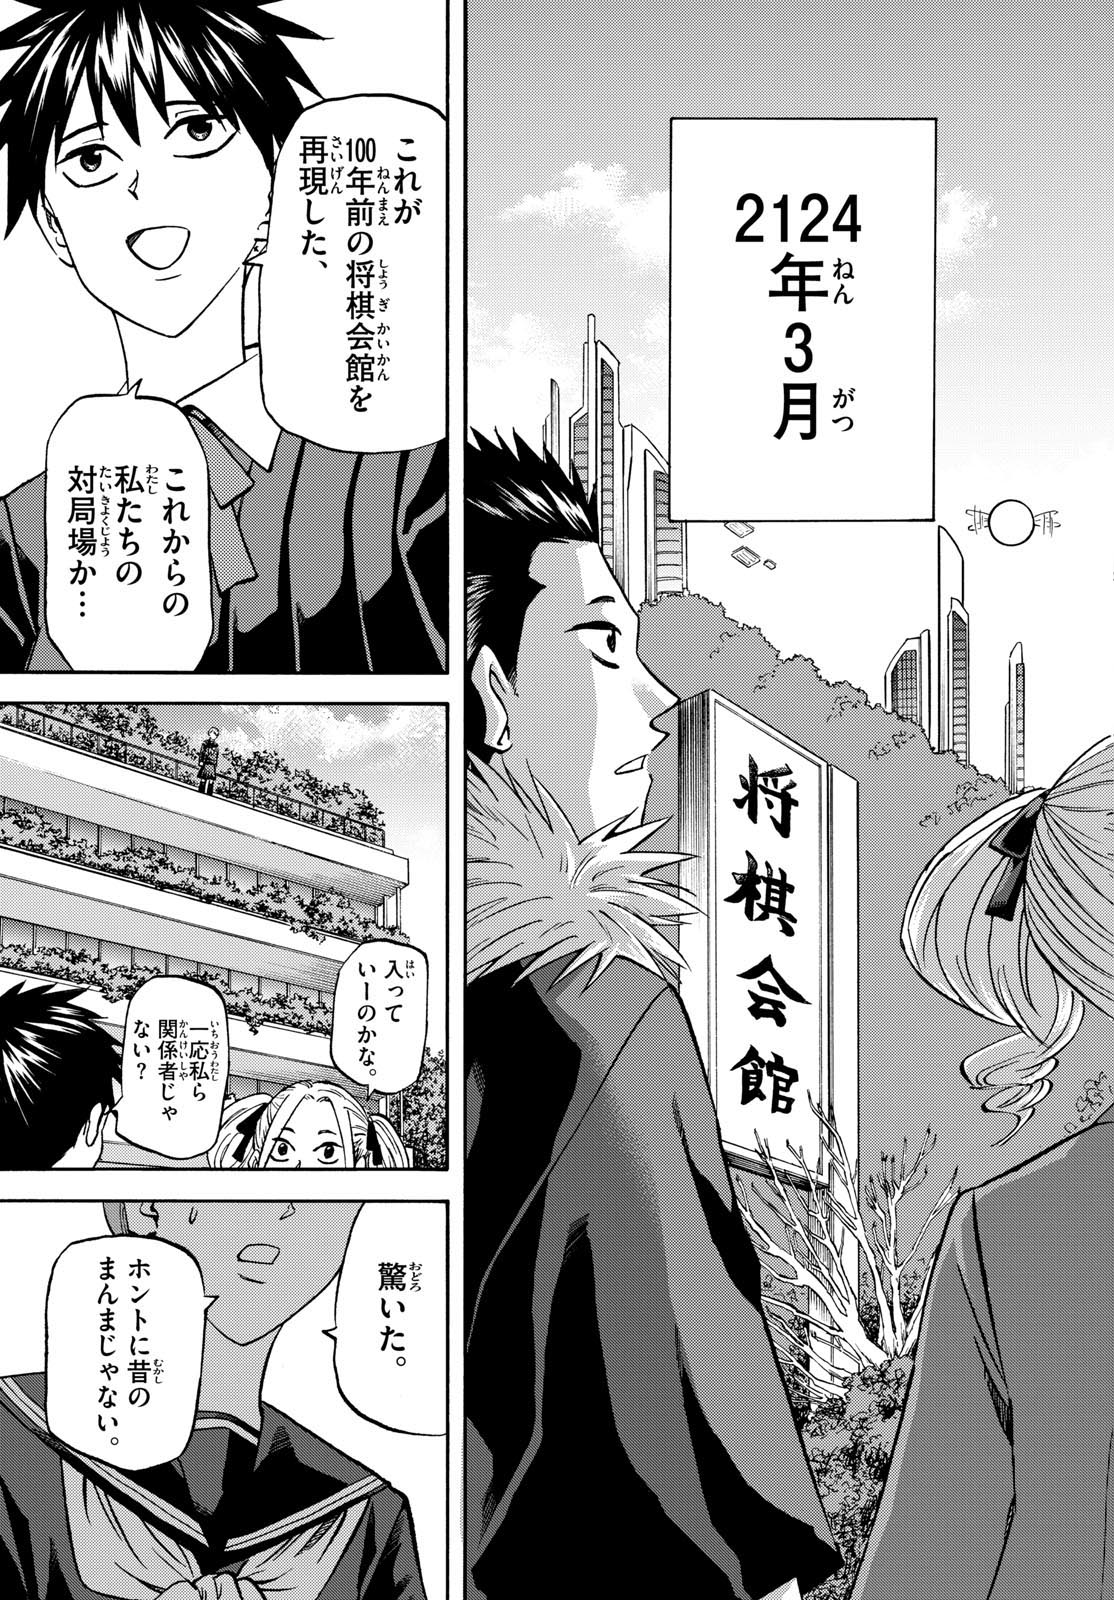 Tatsu to Ichigo - Chapter 181 - Page 17